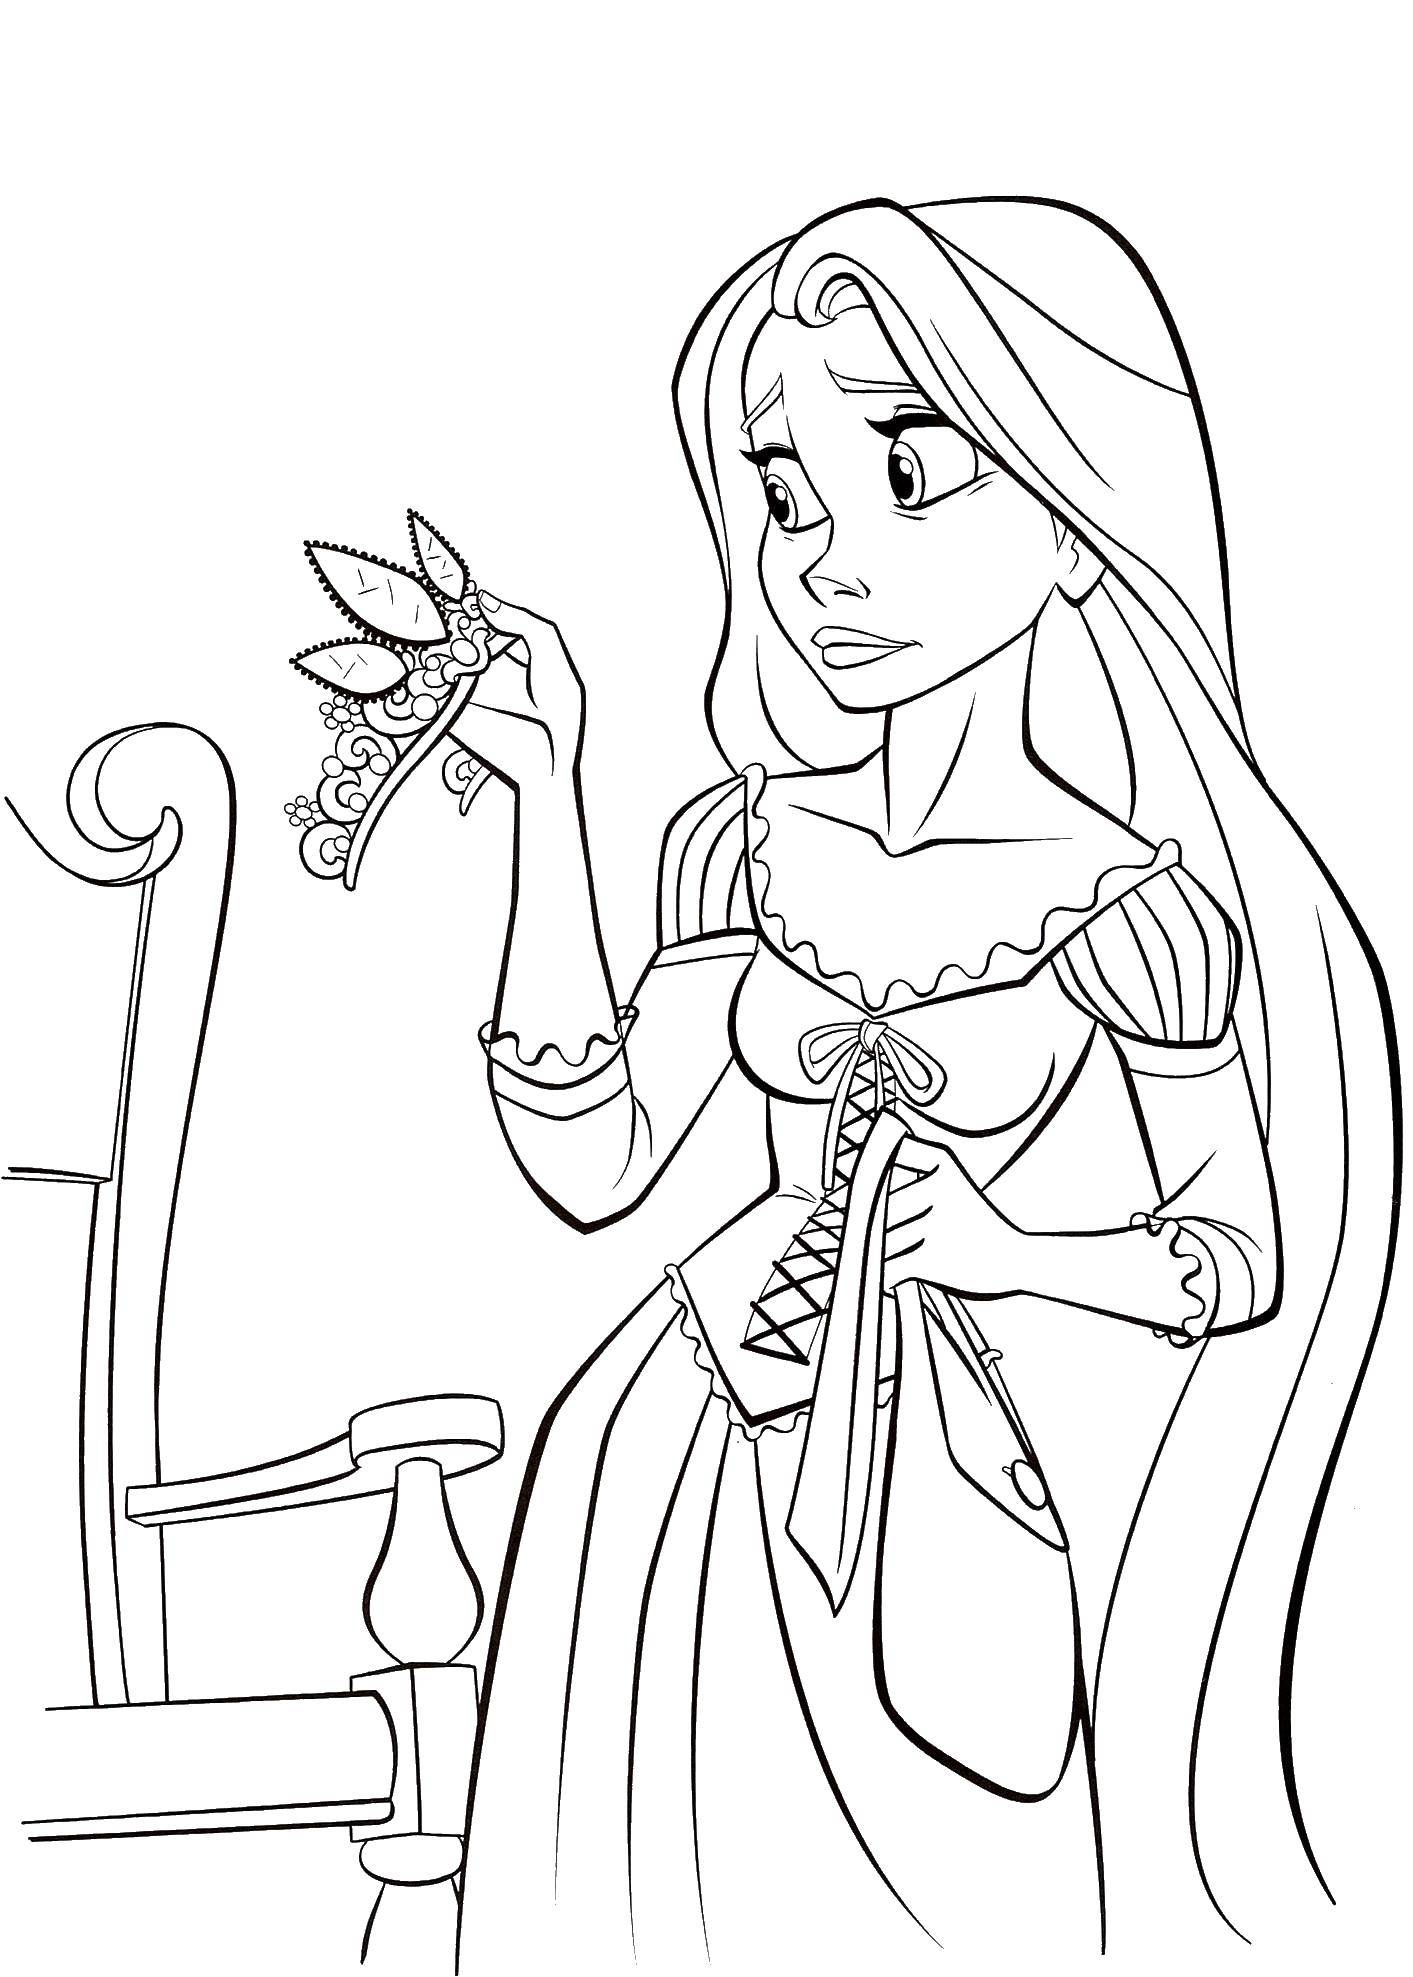 Название: Раскраска Принцесса с короной. Категория: Диснеевские раскраски. Теги: принцесса, корона, волосы.